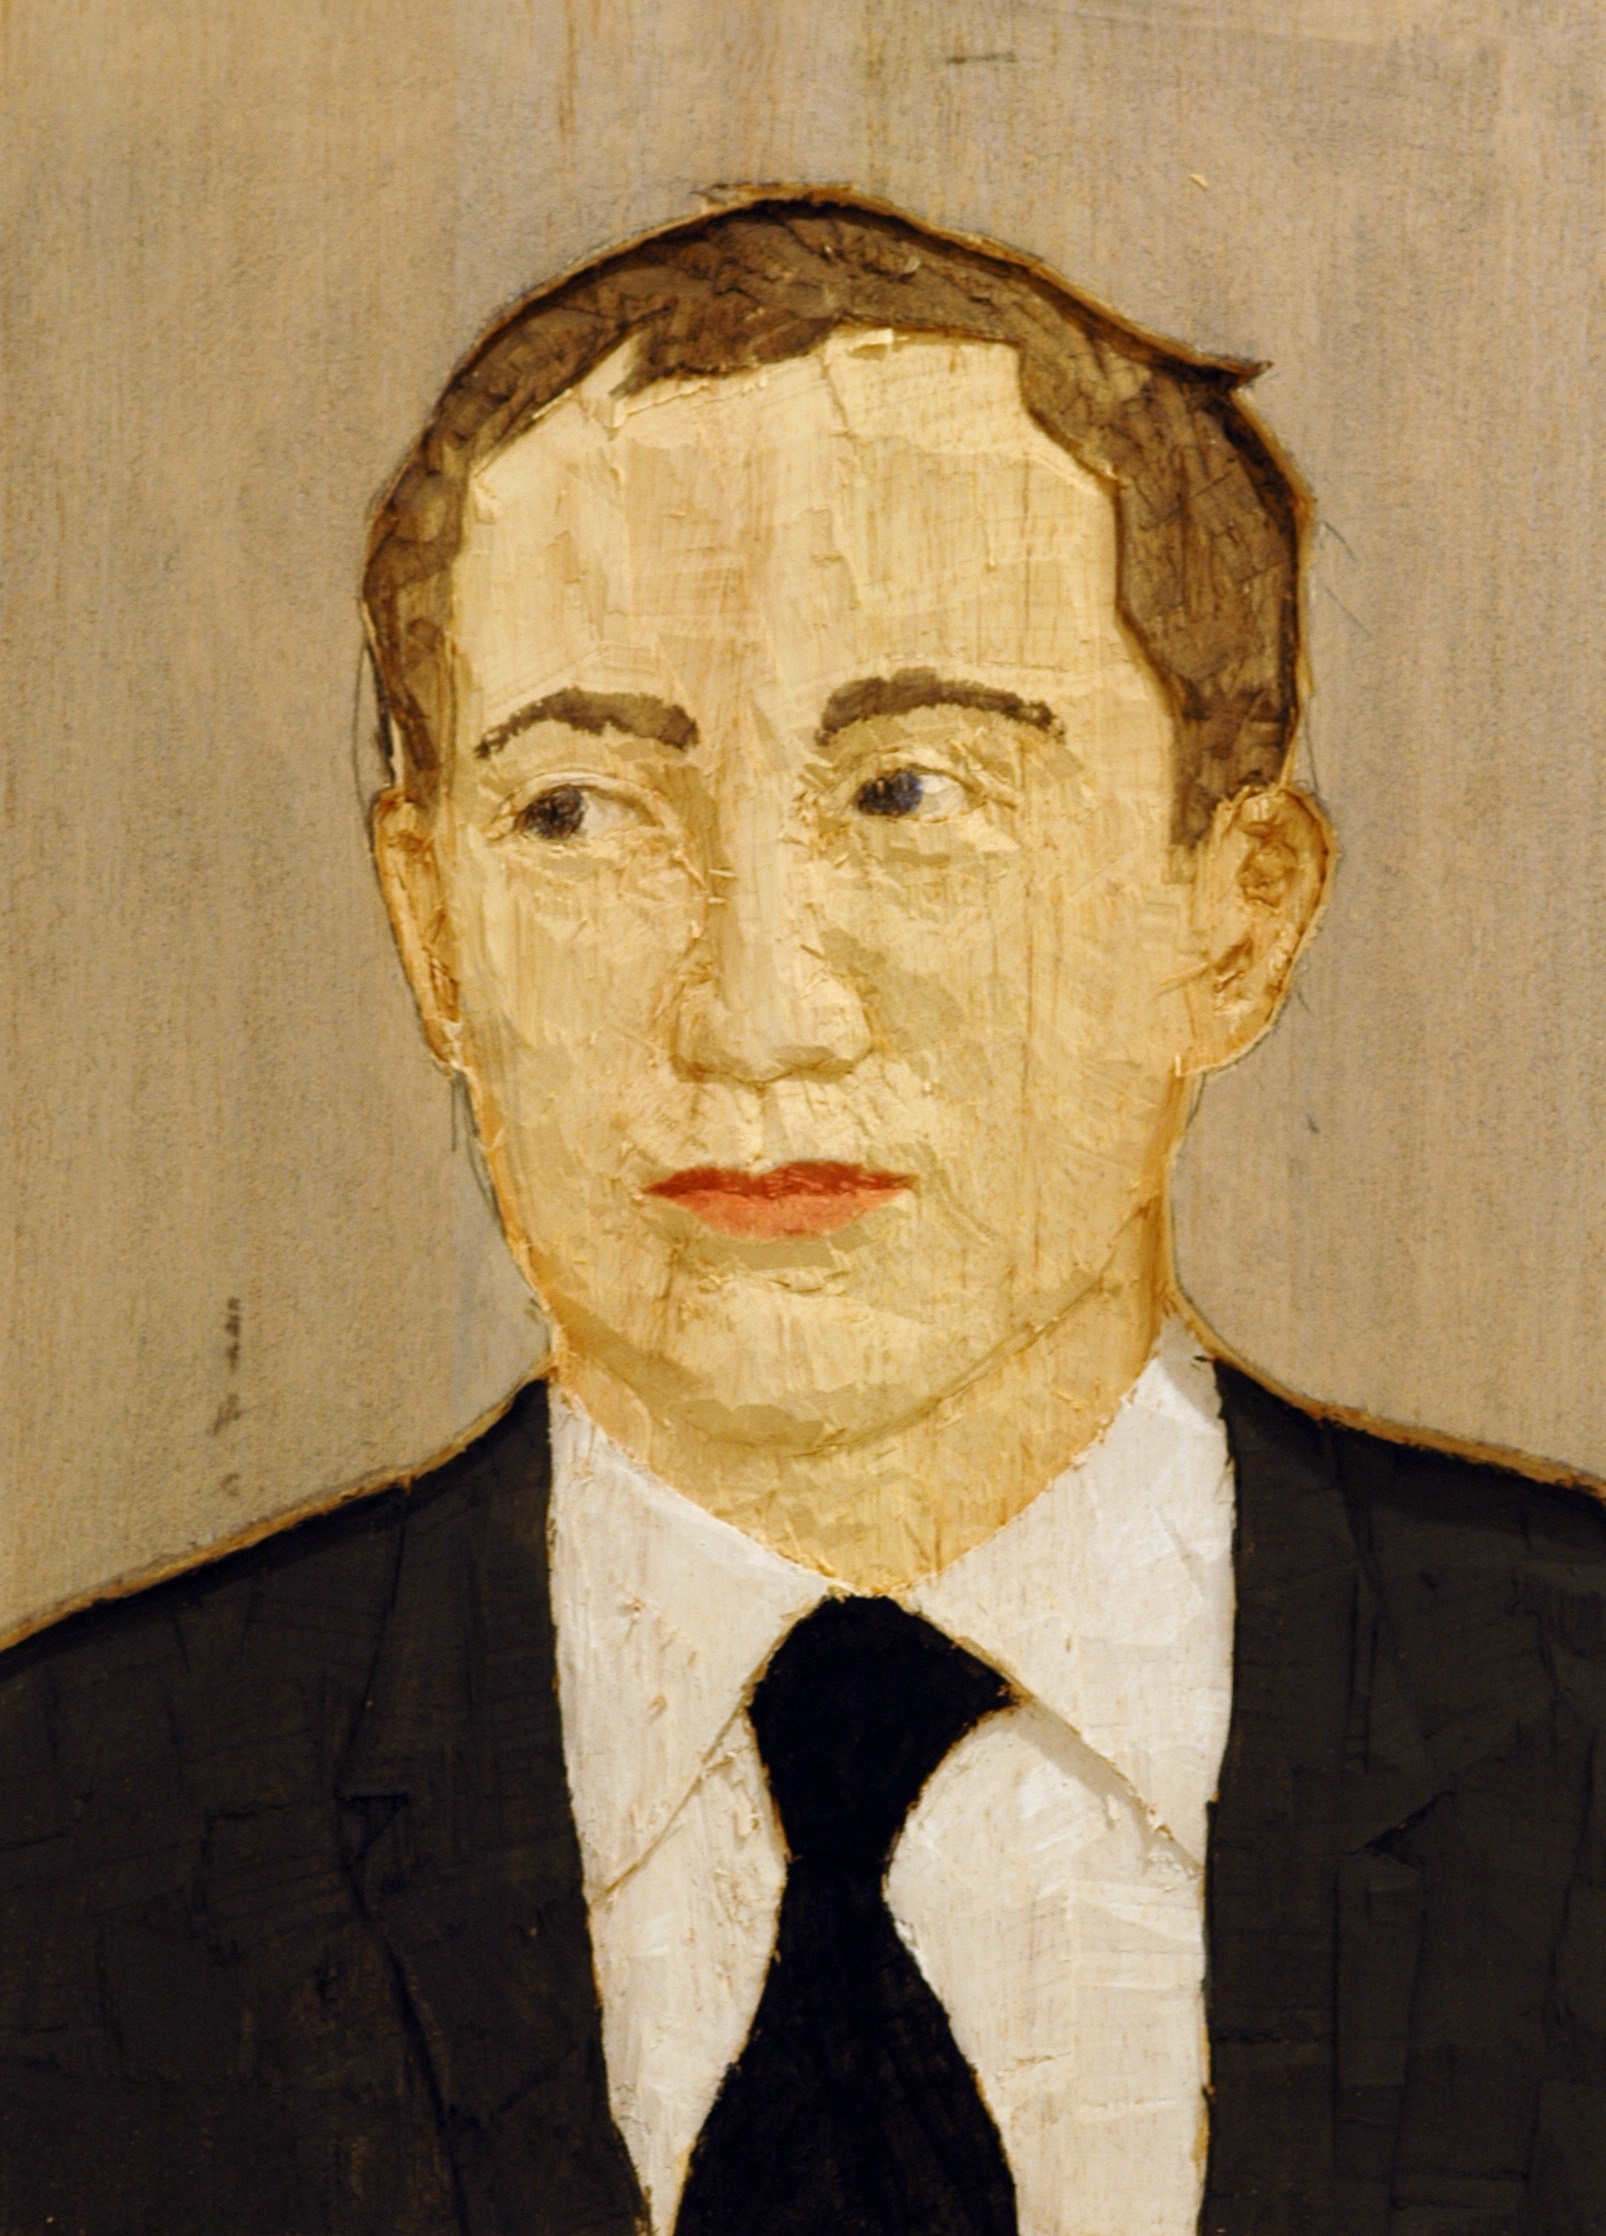 "Senza titolo" 2008, bassorilievo su legno wawa dipinto, 60 x 42 cm